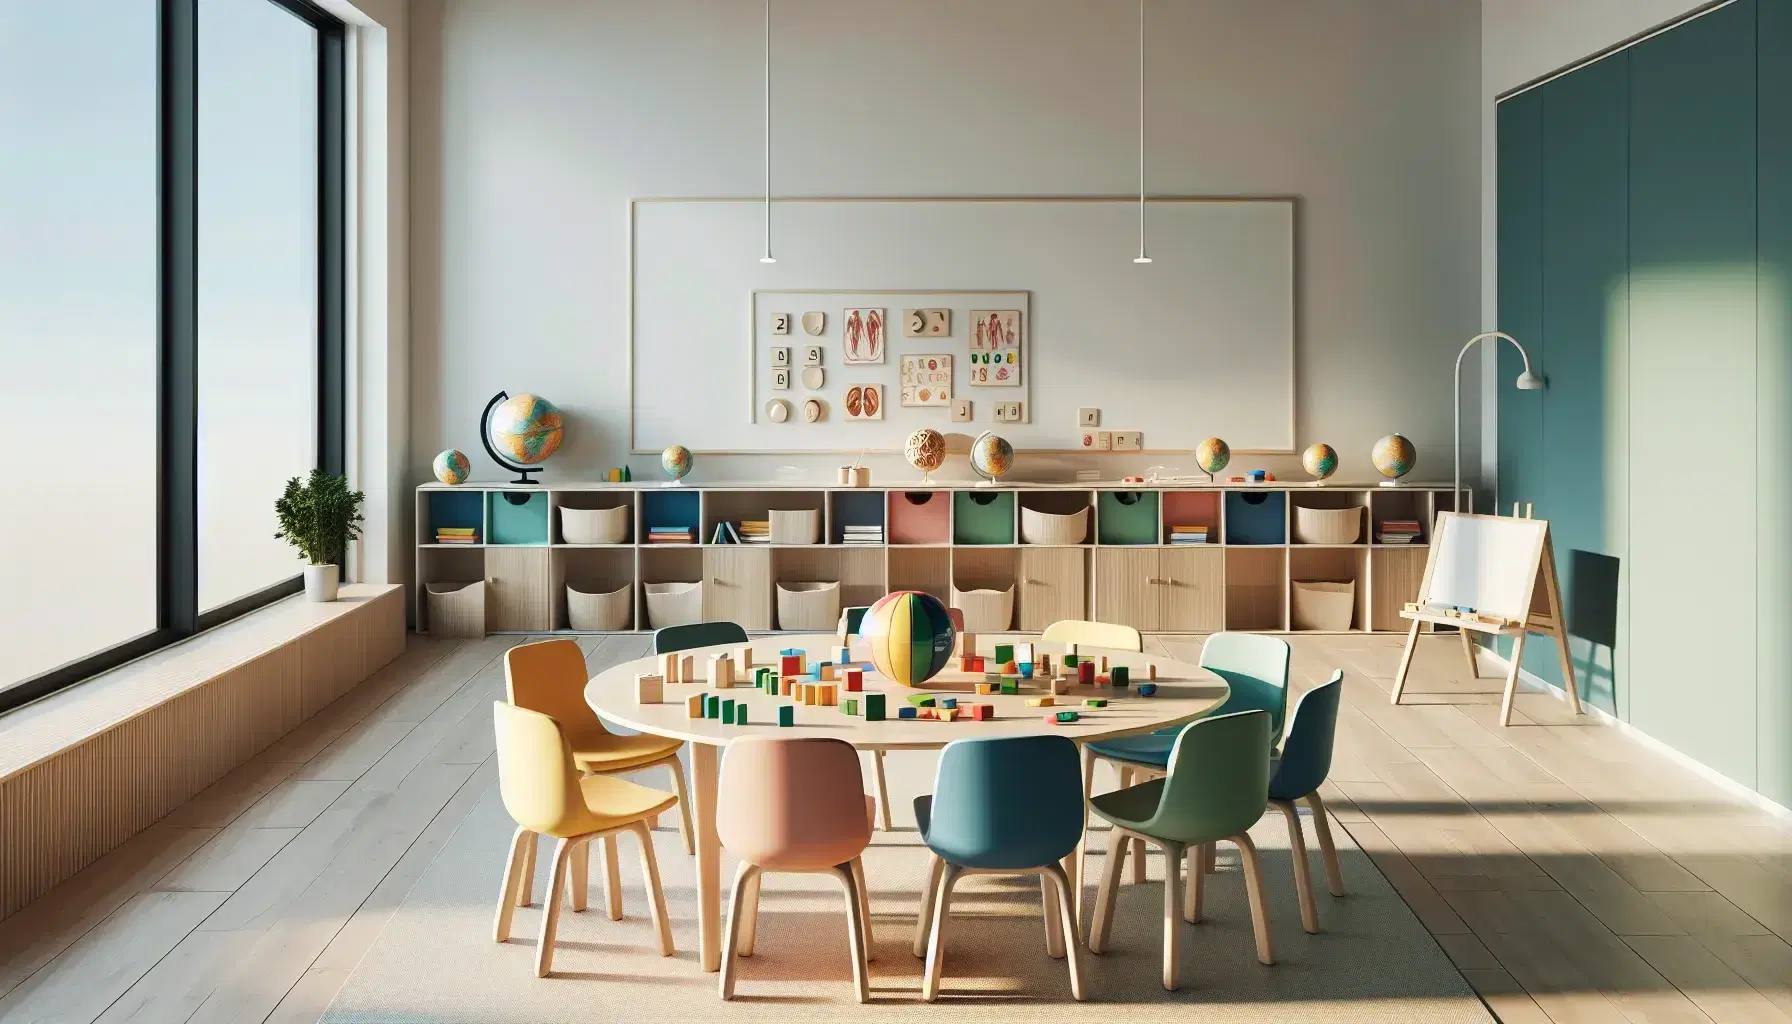 Aula moderna y luminosa con mesa redonda y sillas ergonómicas de colores, bloques de construcción, rompecabezas, estantería con materiales educativos y pizarra blanca.